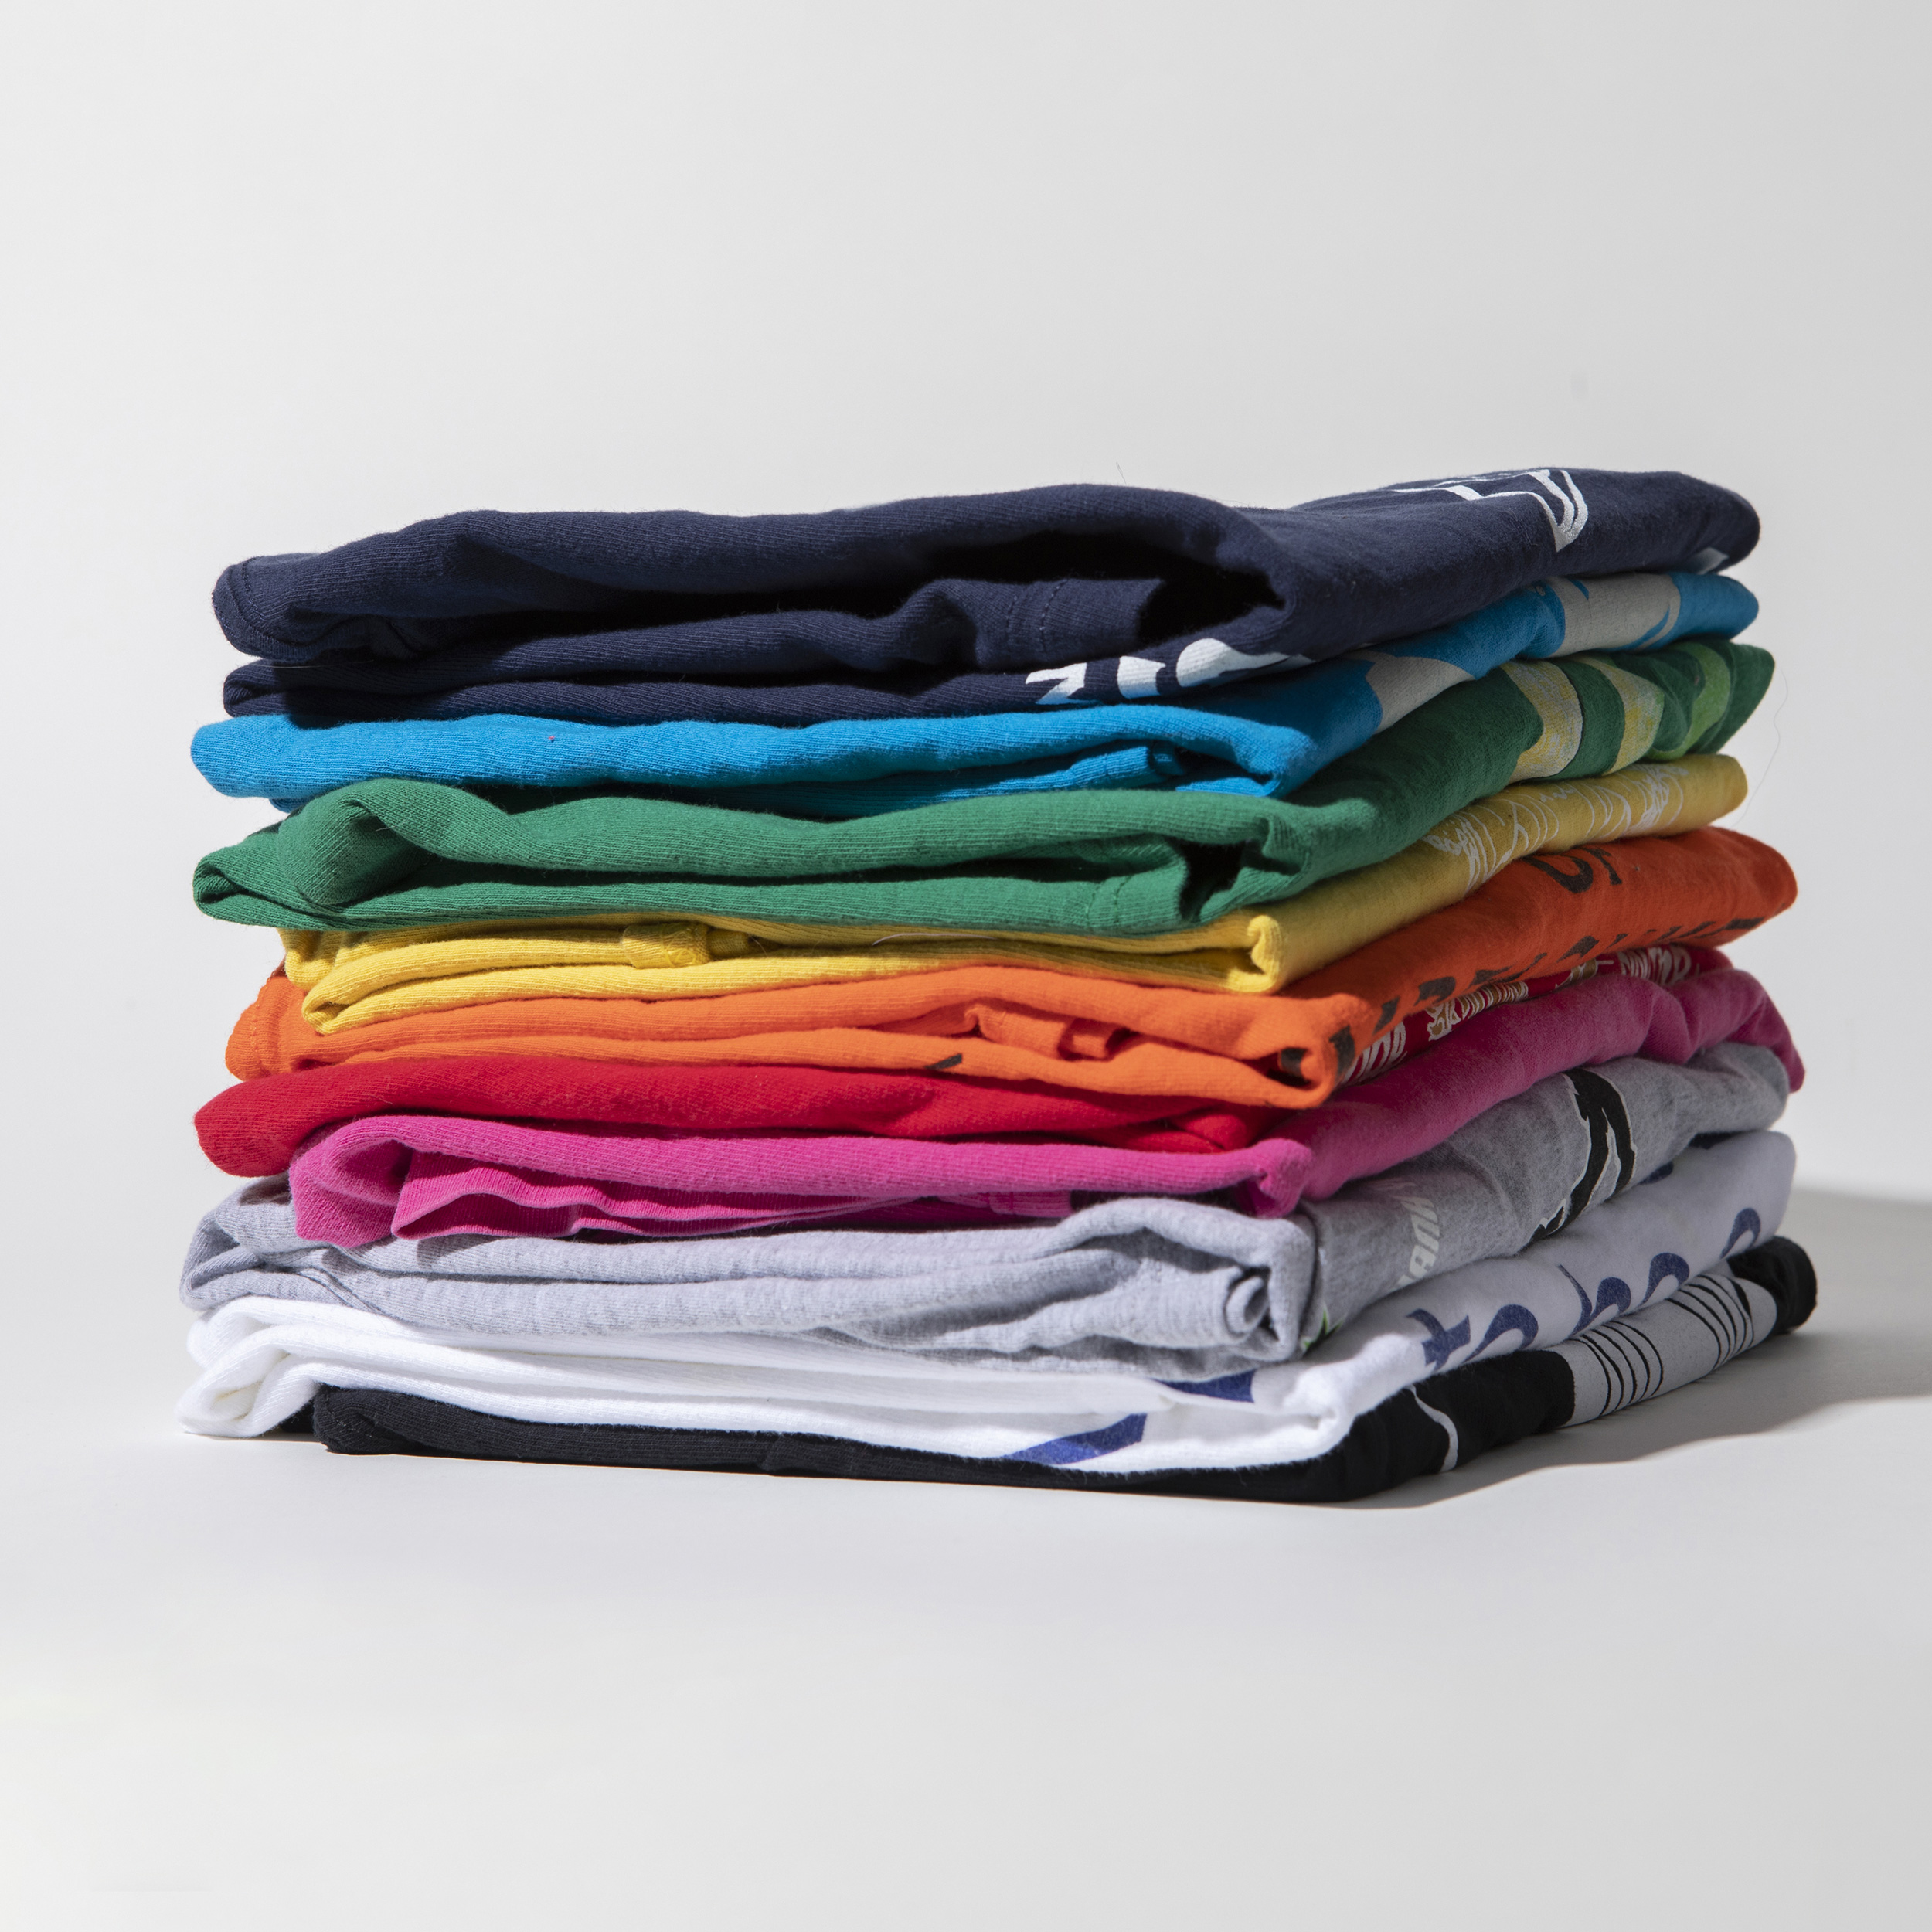 TS Designs' Printed T-Shirt Grab Bag (10 - Mixed Size) | TS Designs